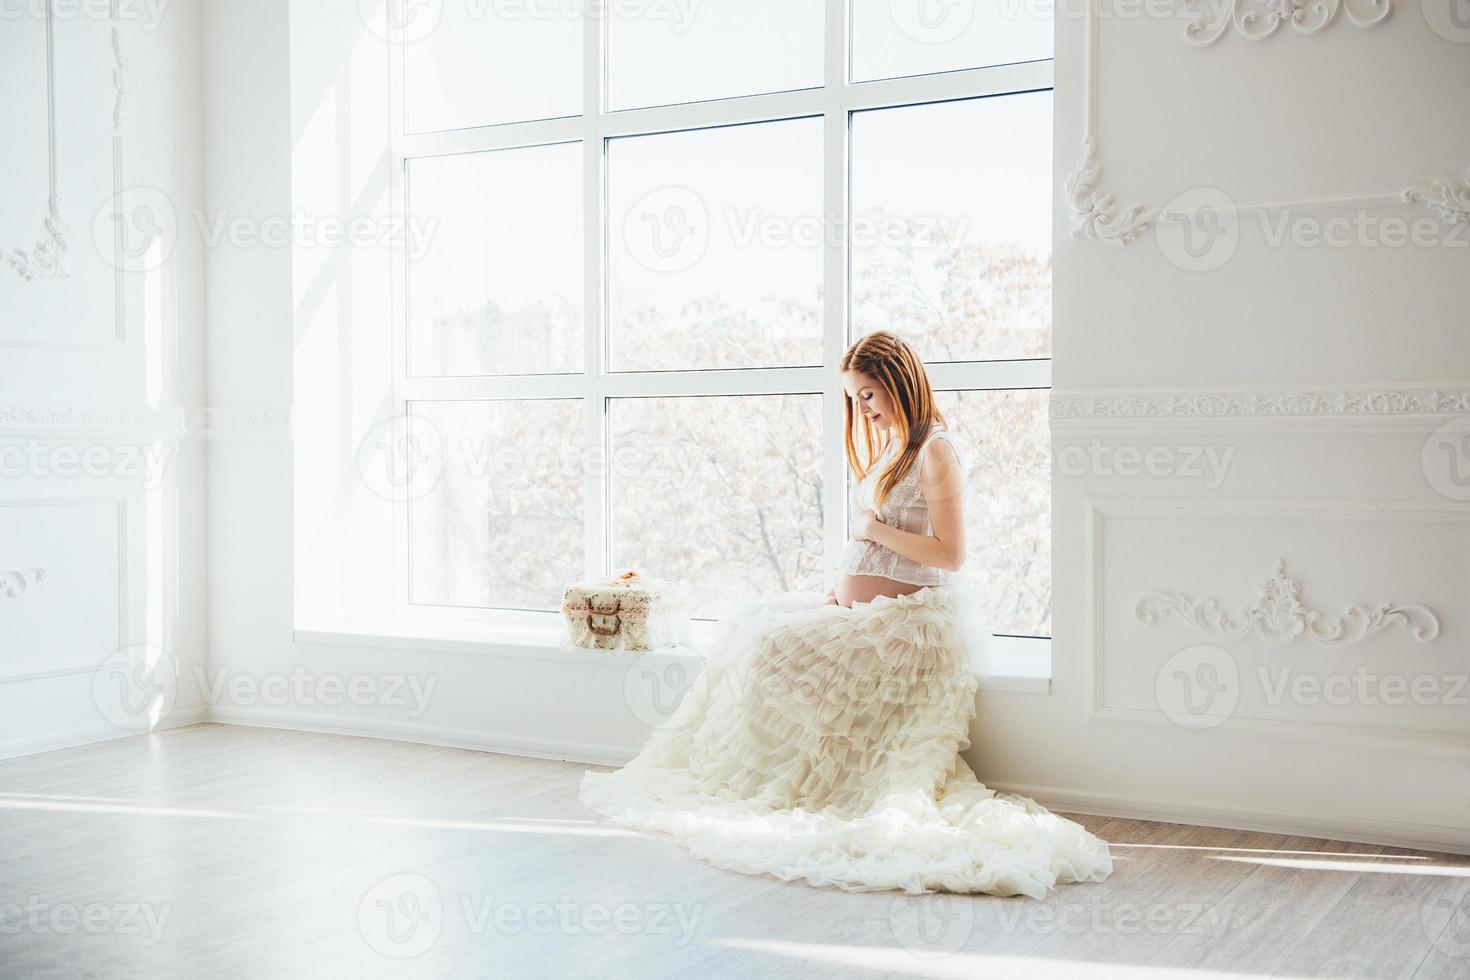 roodharig zwanger jong meisje in een wit jurk in de buurt de venster foto